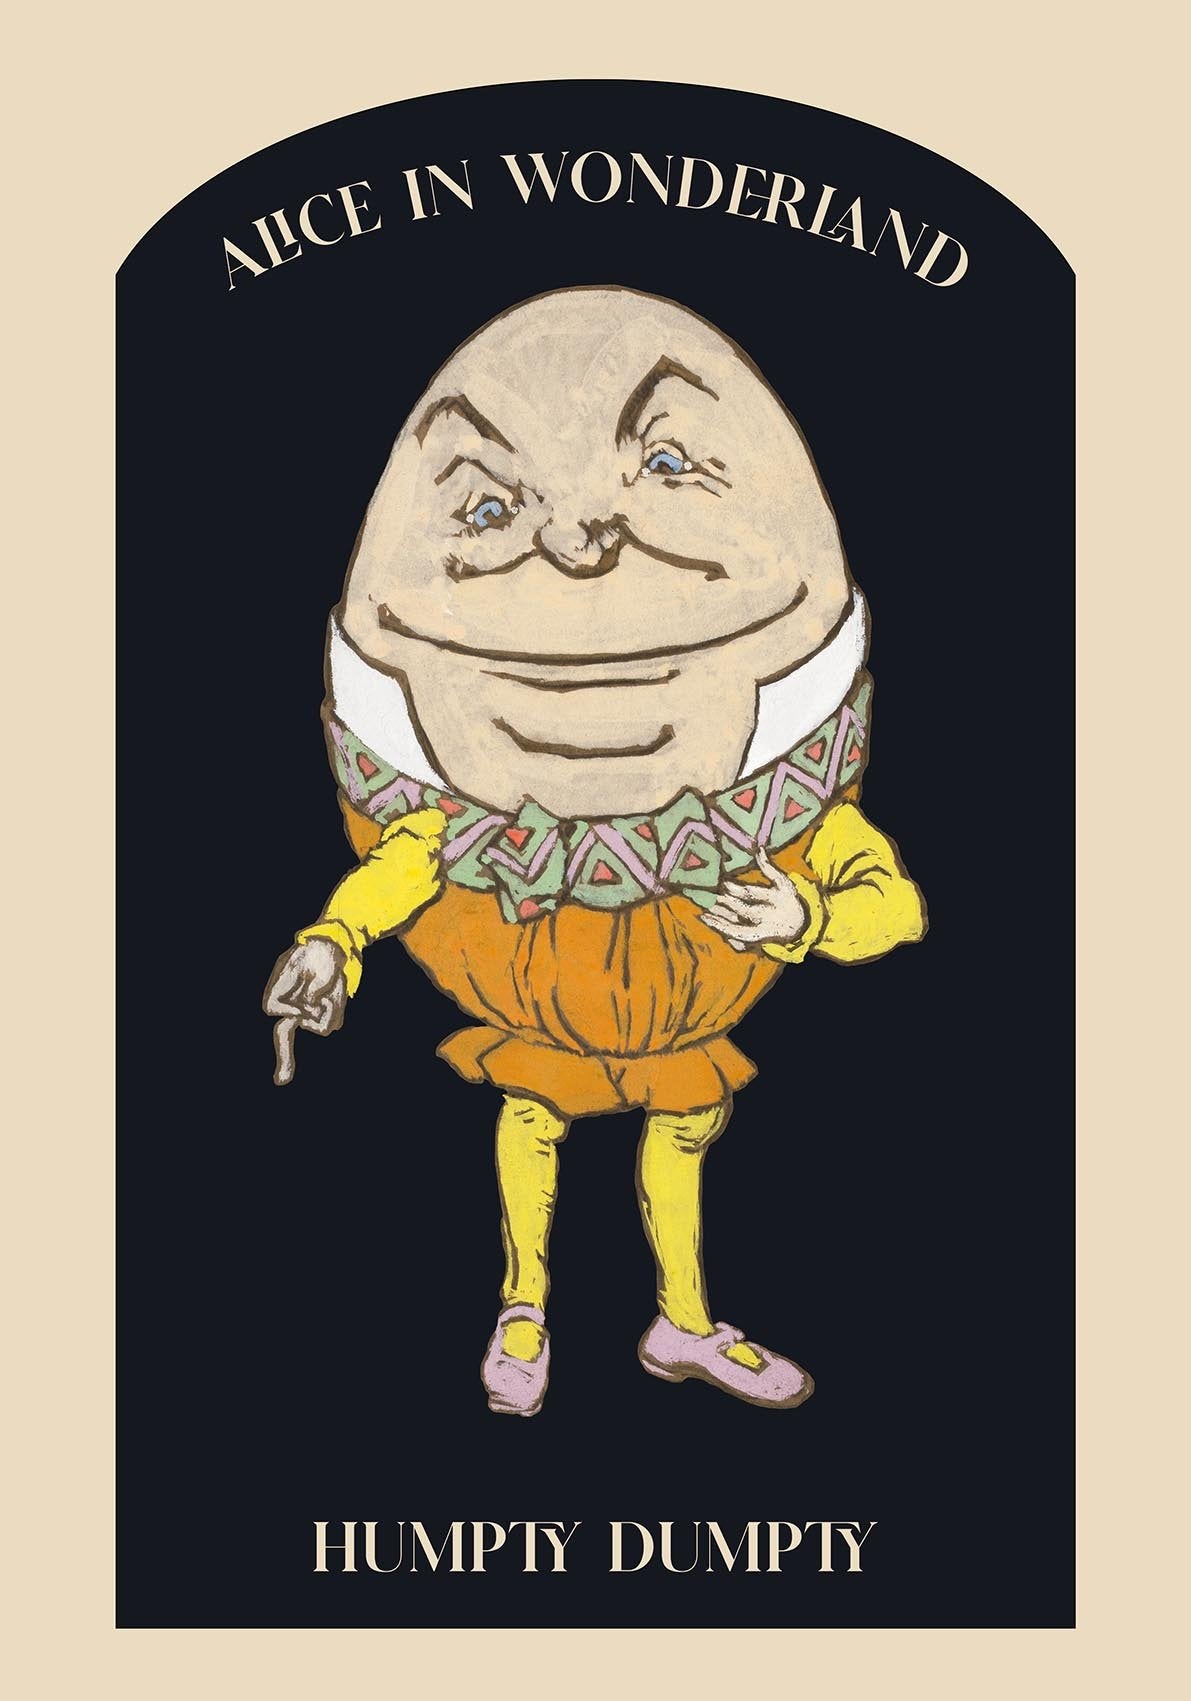 Humpty Dumpty from Alice in Wonderland